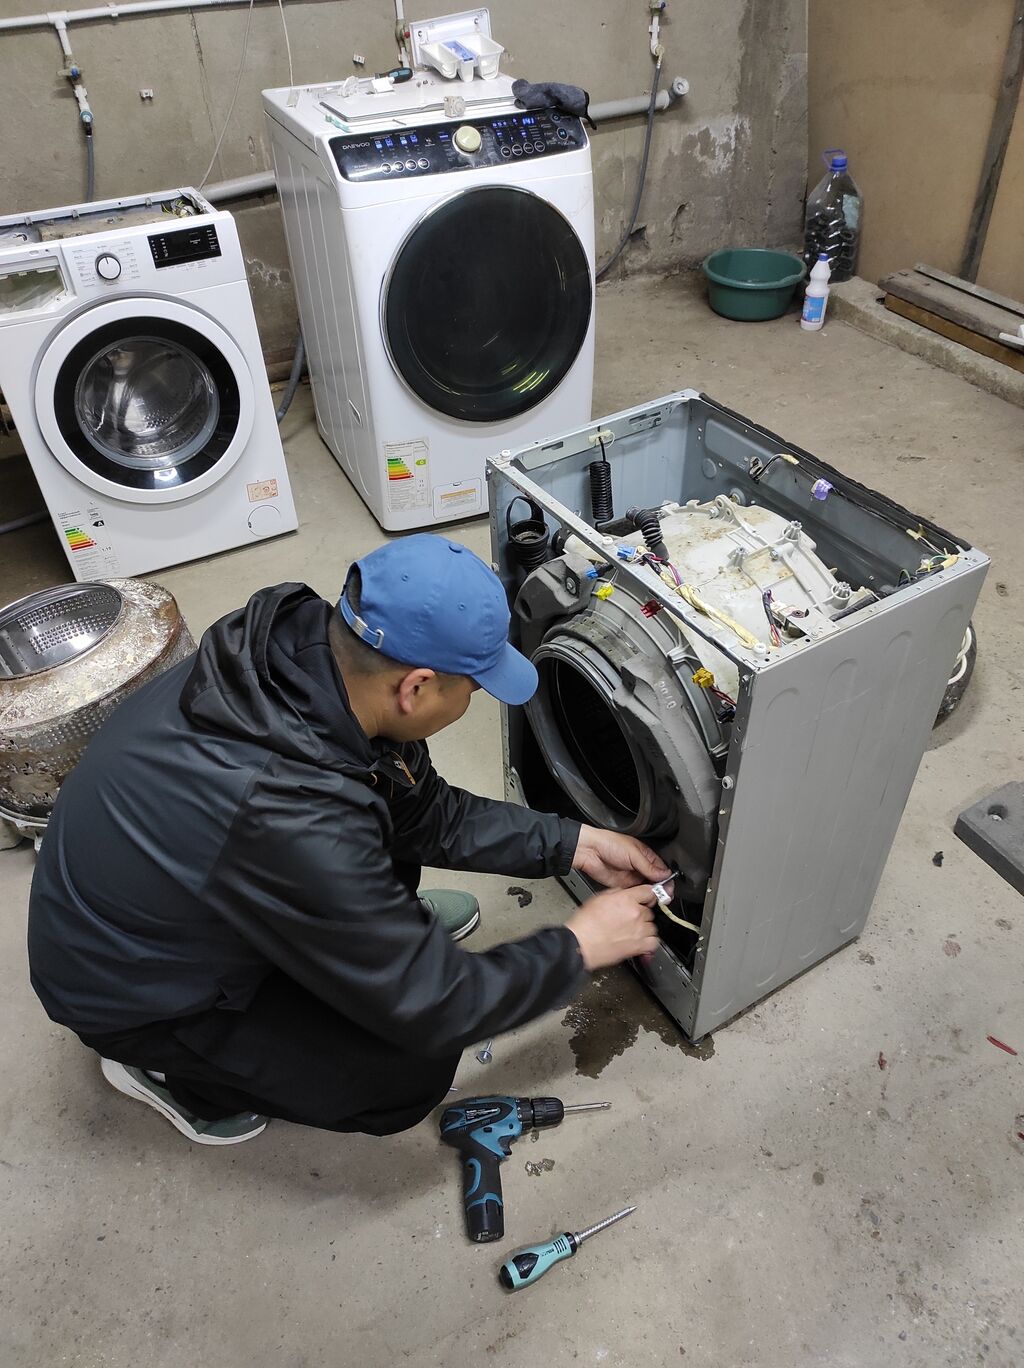 Ремонт стиральной машины своими руками: обзор возможных поломок и способов их устранения